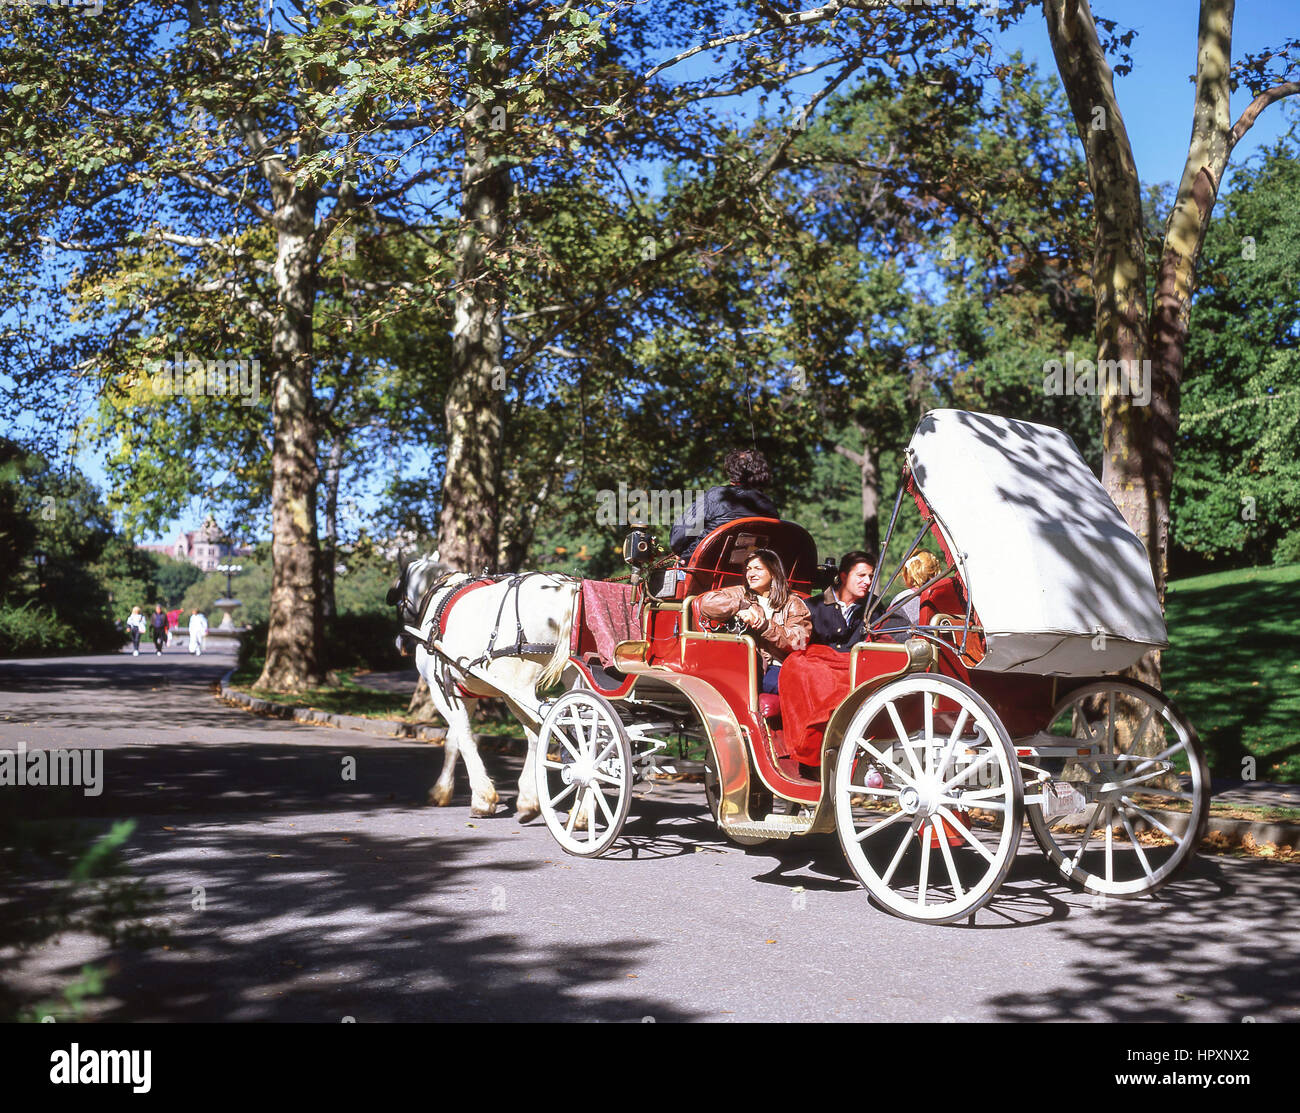 Carrozza a cavallo ride, Central Park, Manhattan, New York, nello Stato di New York, Stati Uniti d'America Foto Stock